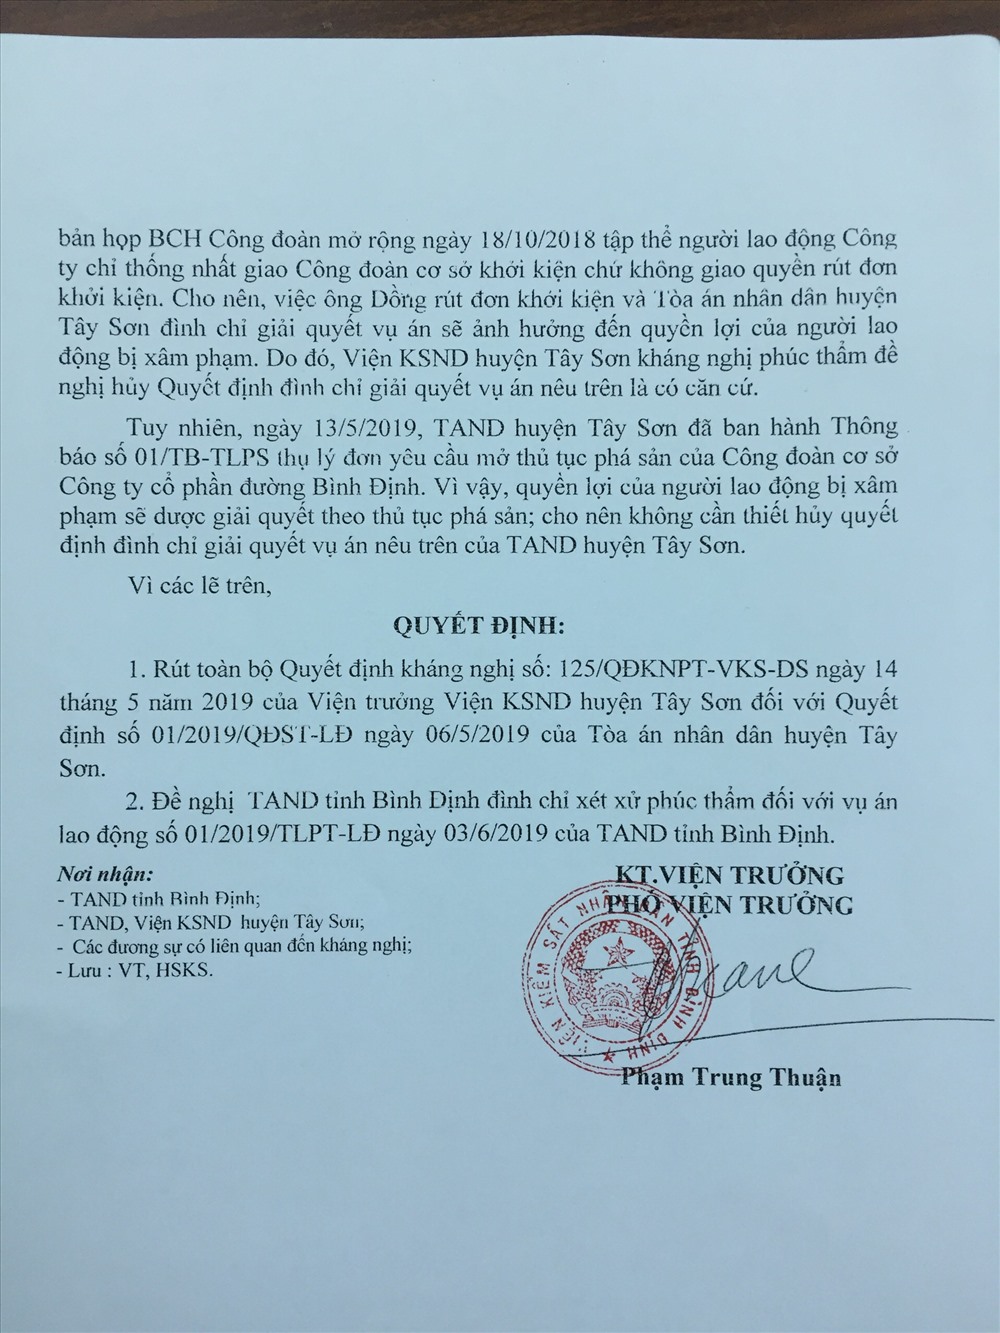 Quyết định rút kháng nghị phúc thẩm của VIện KSND tỉnh Bình Định